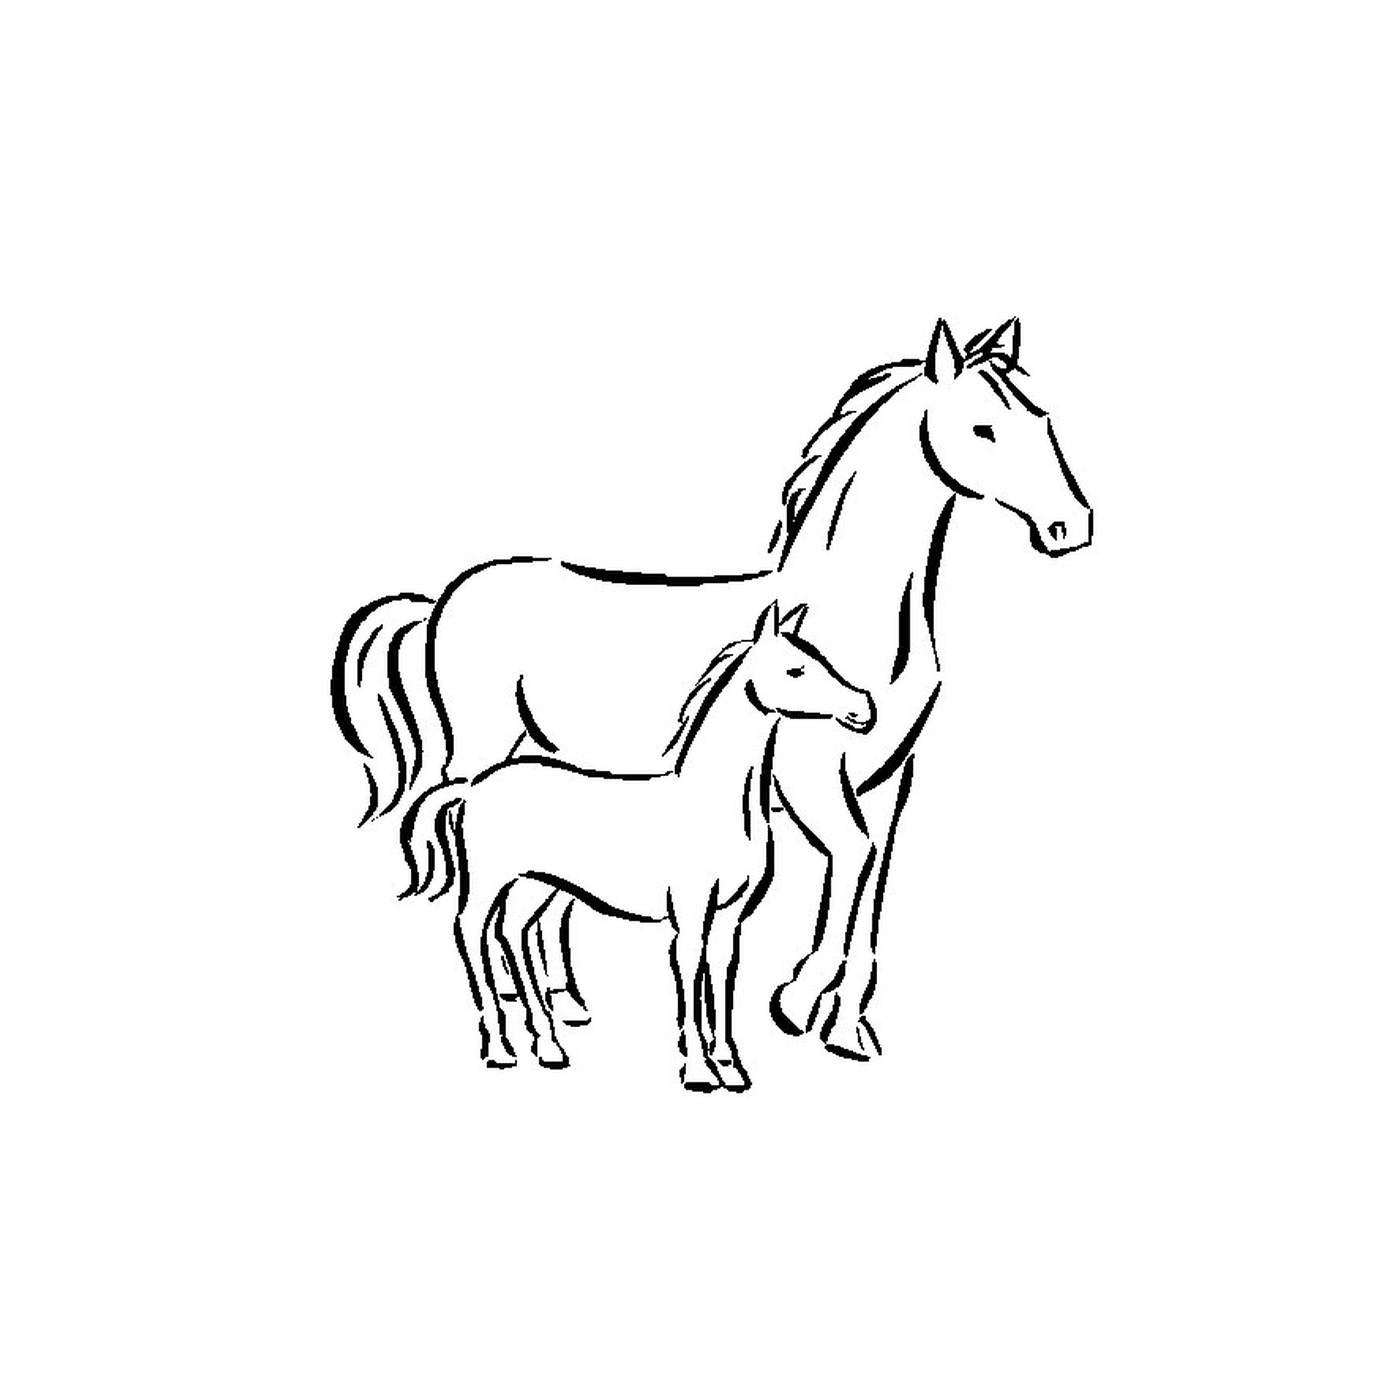  Pferde - Ein Pferd und ein Fohlen stehen Seite an Seite 